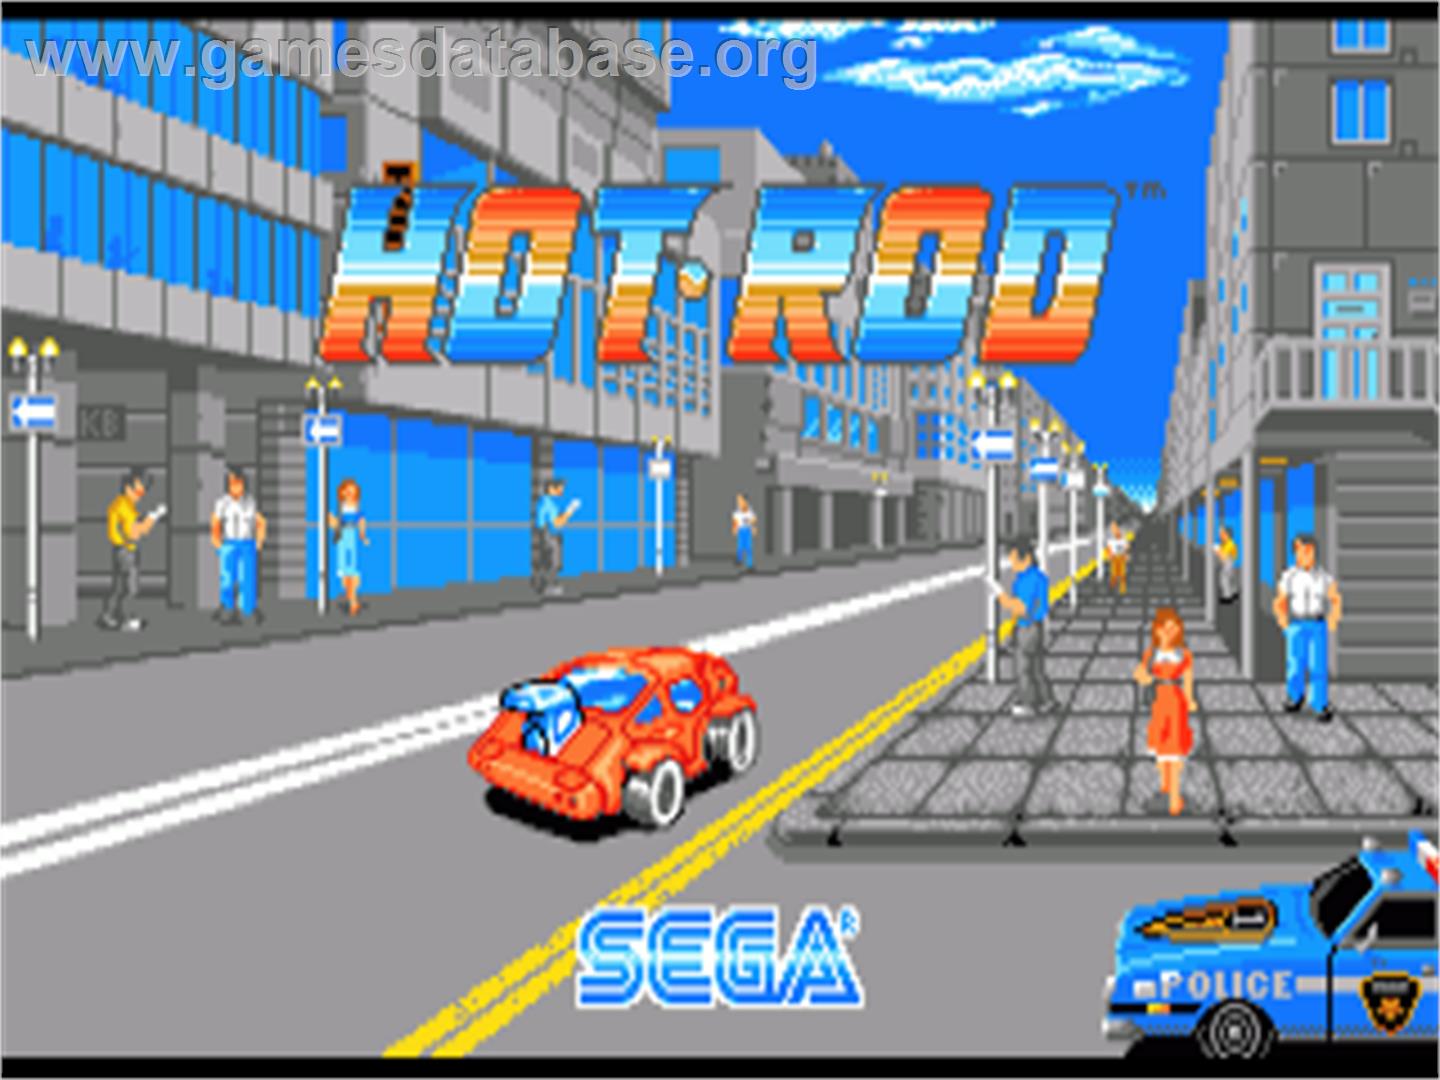 Hot Rod - Commodore Amiga - Artwork - Title Screen